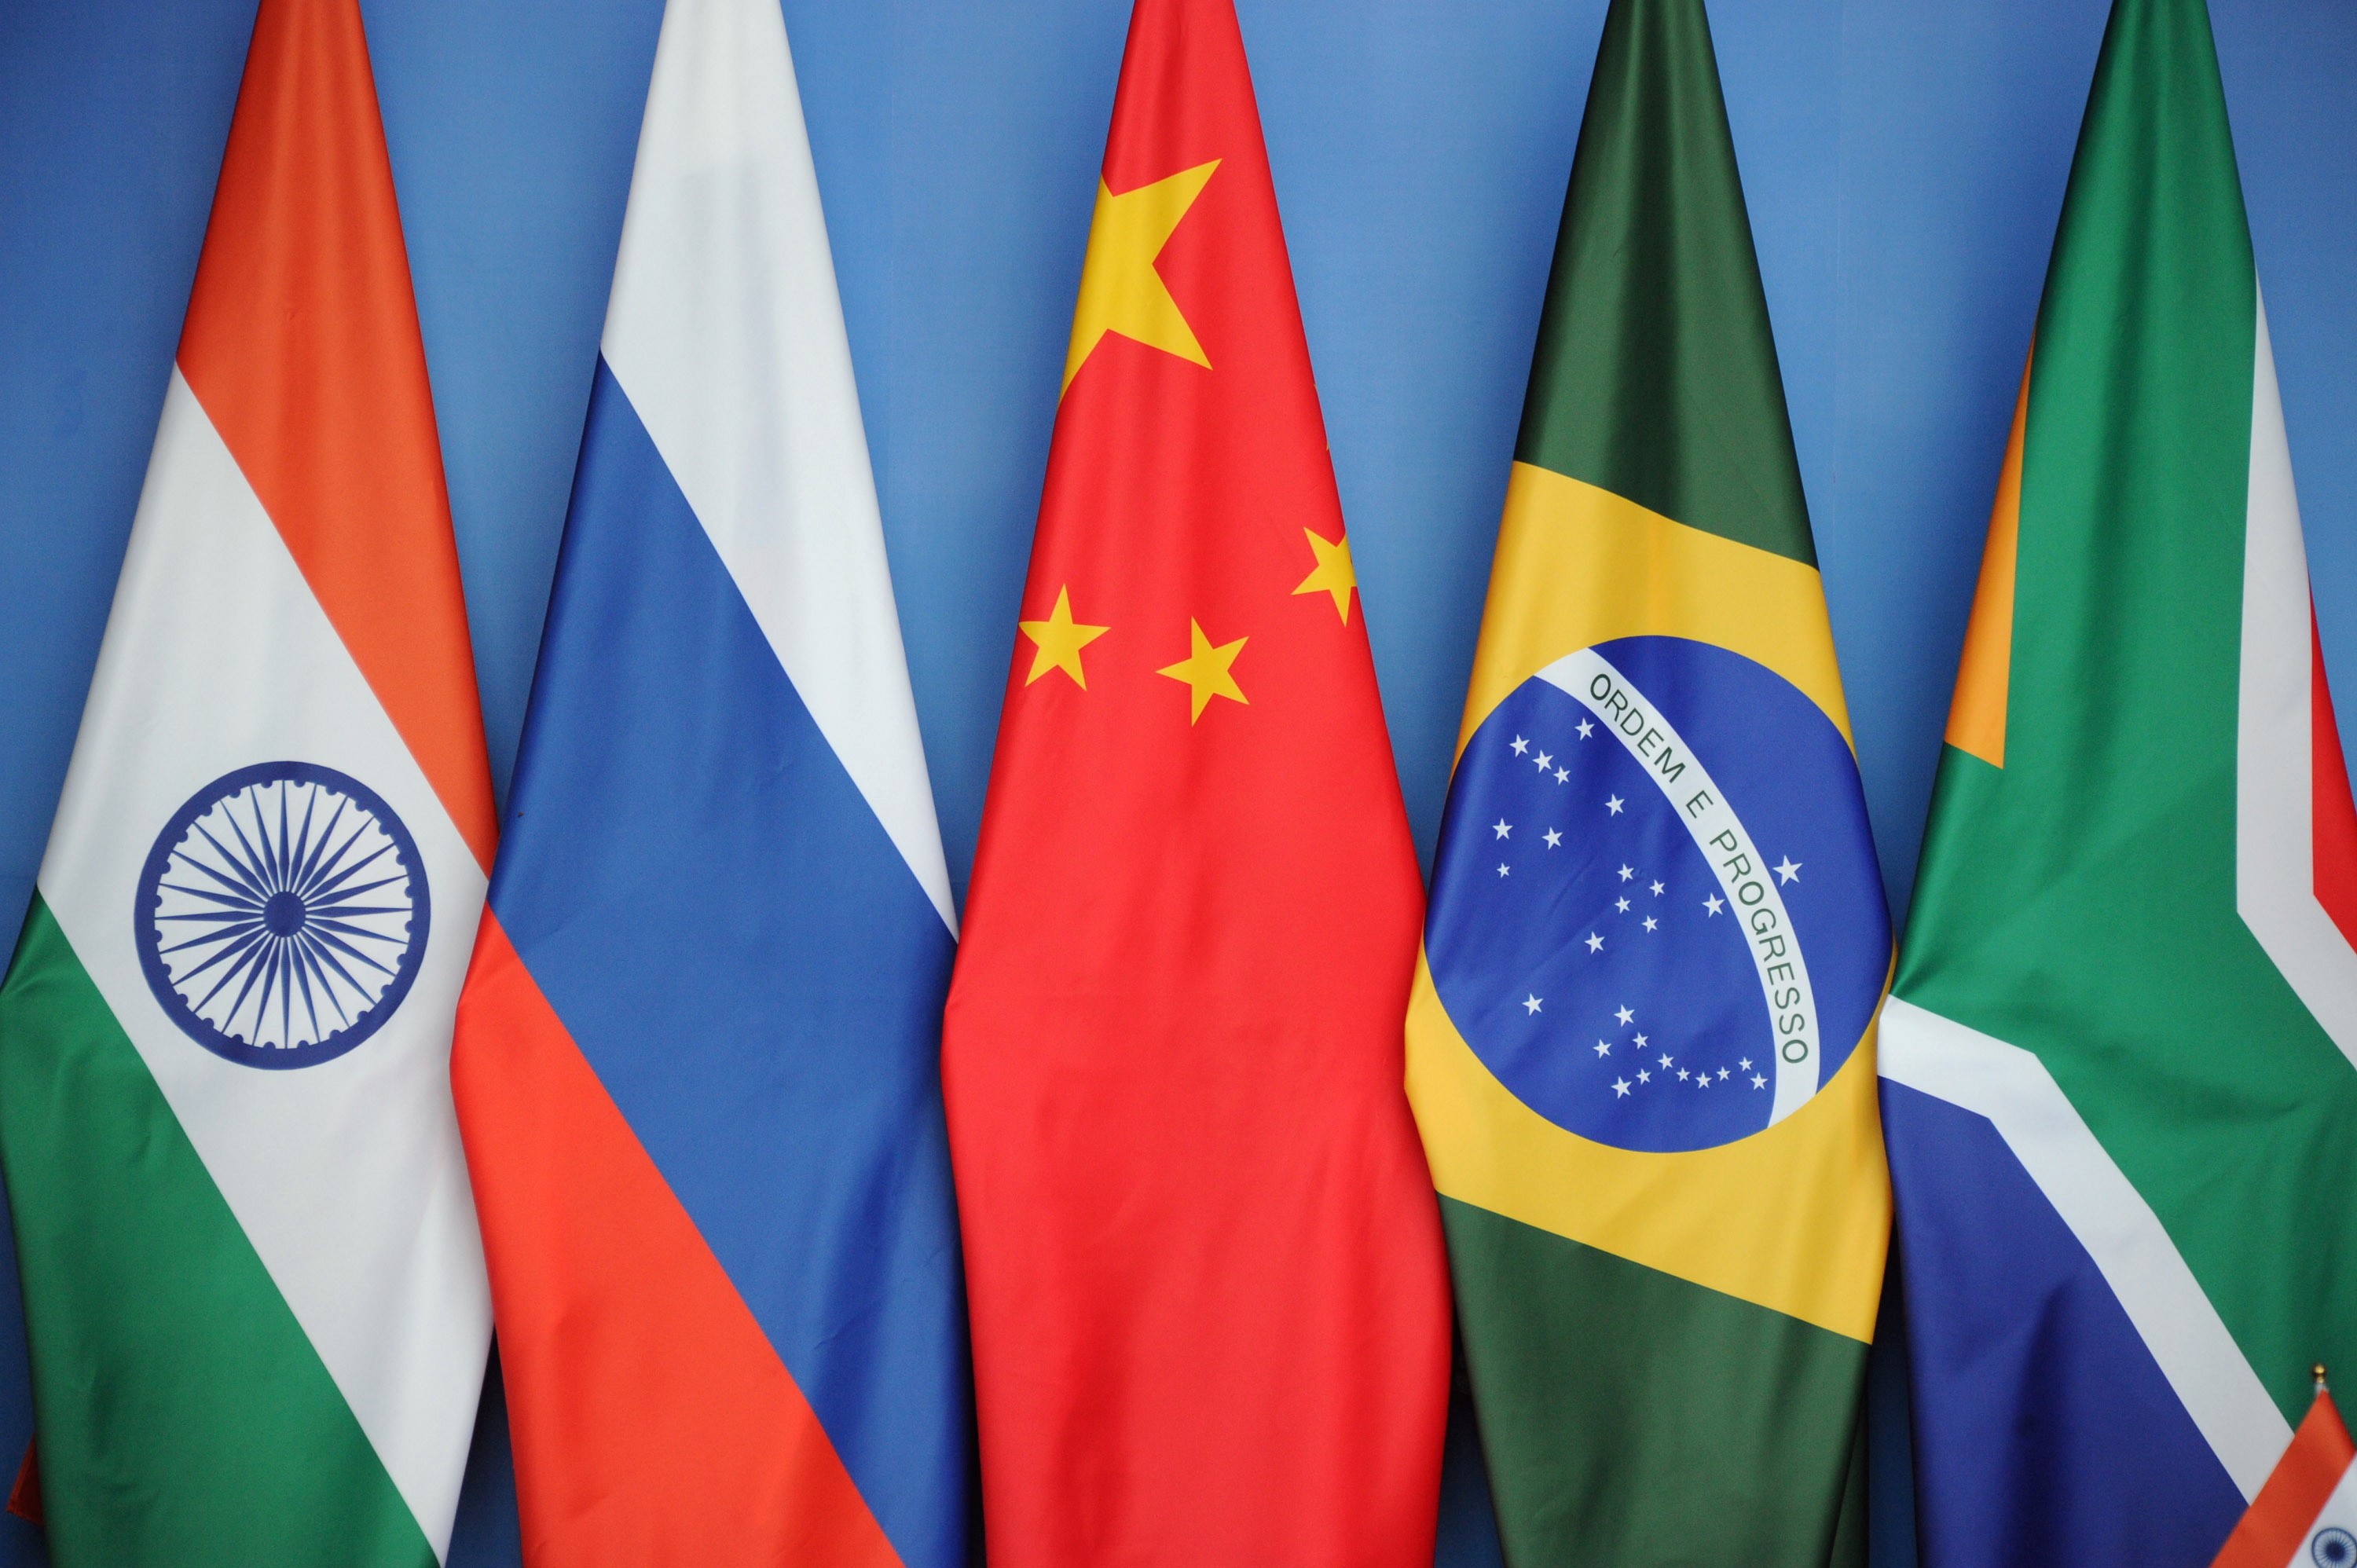 Skupino BRICS sestavljajo Brazilija (B), Rusija (R), Indija (I), Kitajska (C) in Južna Afrika (S).